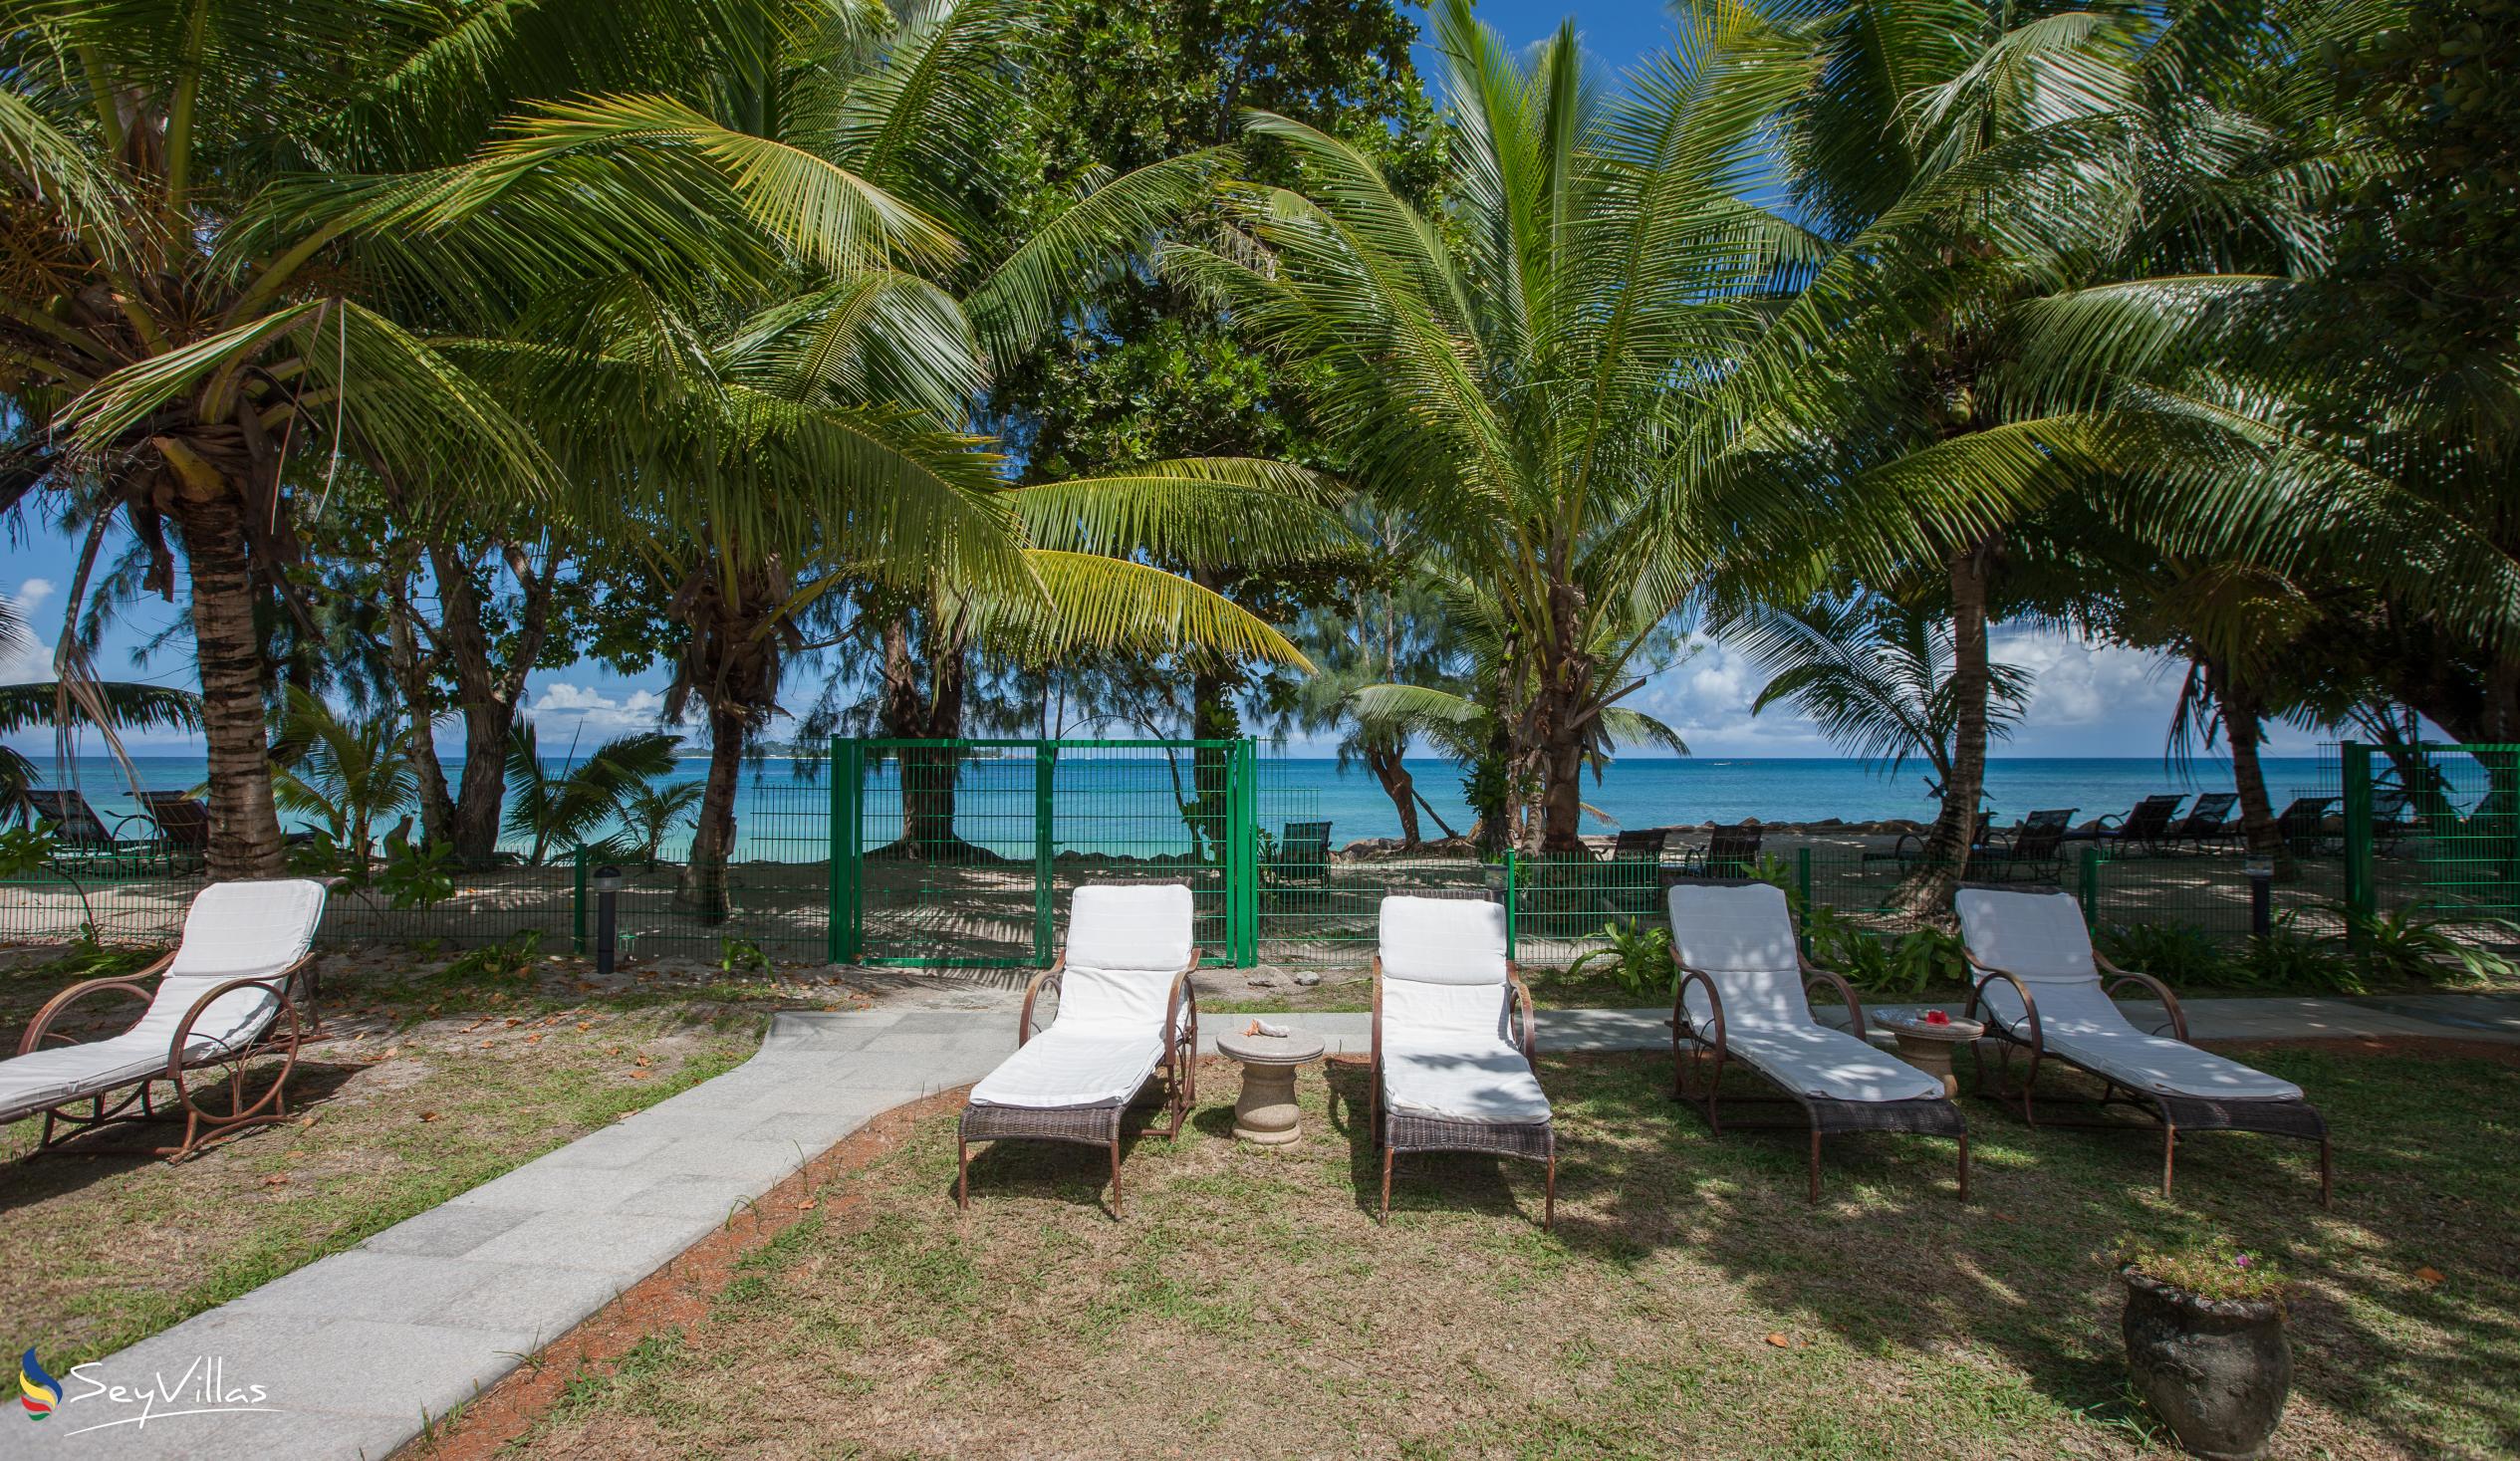 Foto 12: Castello Beach Villa - Aussenbereich - Praslin (Seychellen)